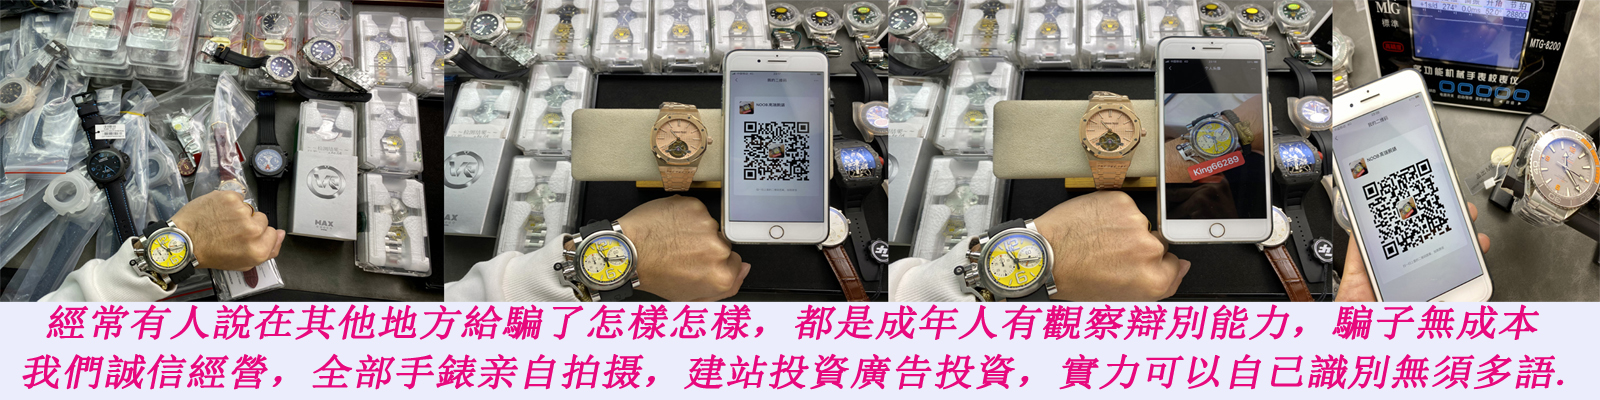 香港手錶論壇,N廠,N廠手錶,高仿勞力士,高仿手錶,VS廠手錶,仿表